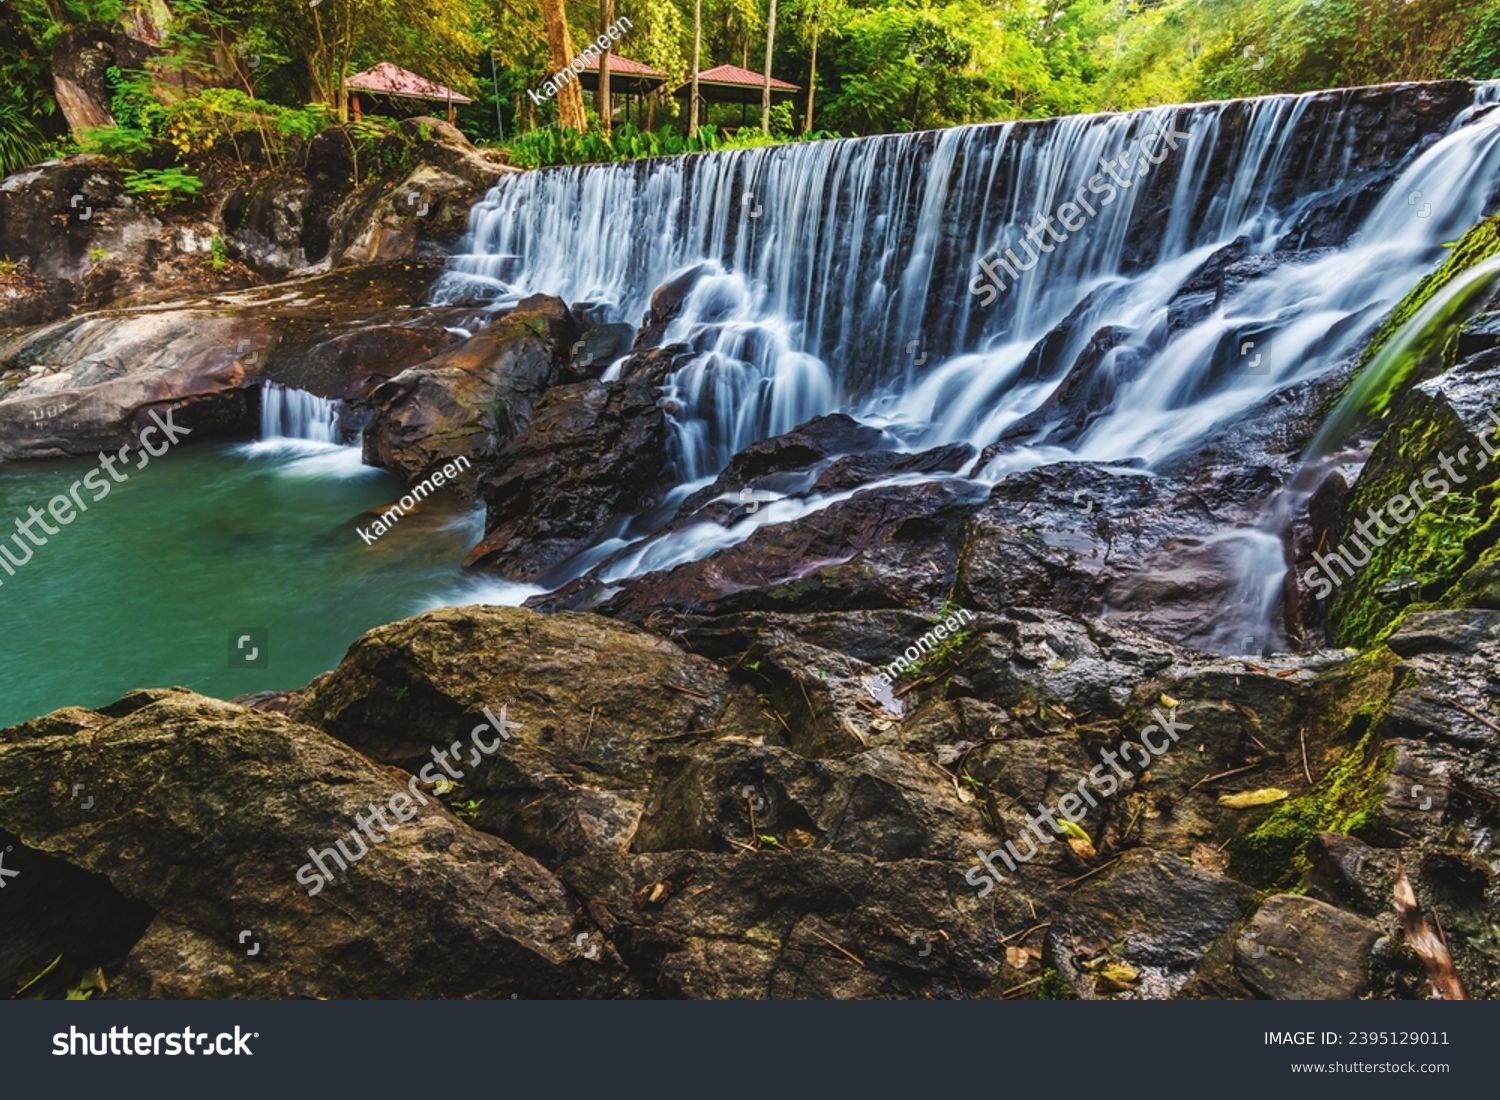 Ka Ang Water Fall small size waterfall ,Nakhon Nayok,Thailand #2395129011